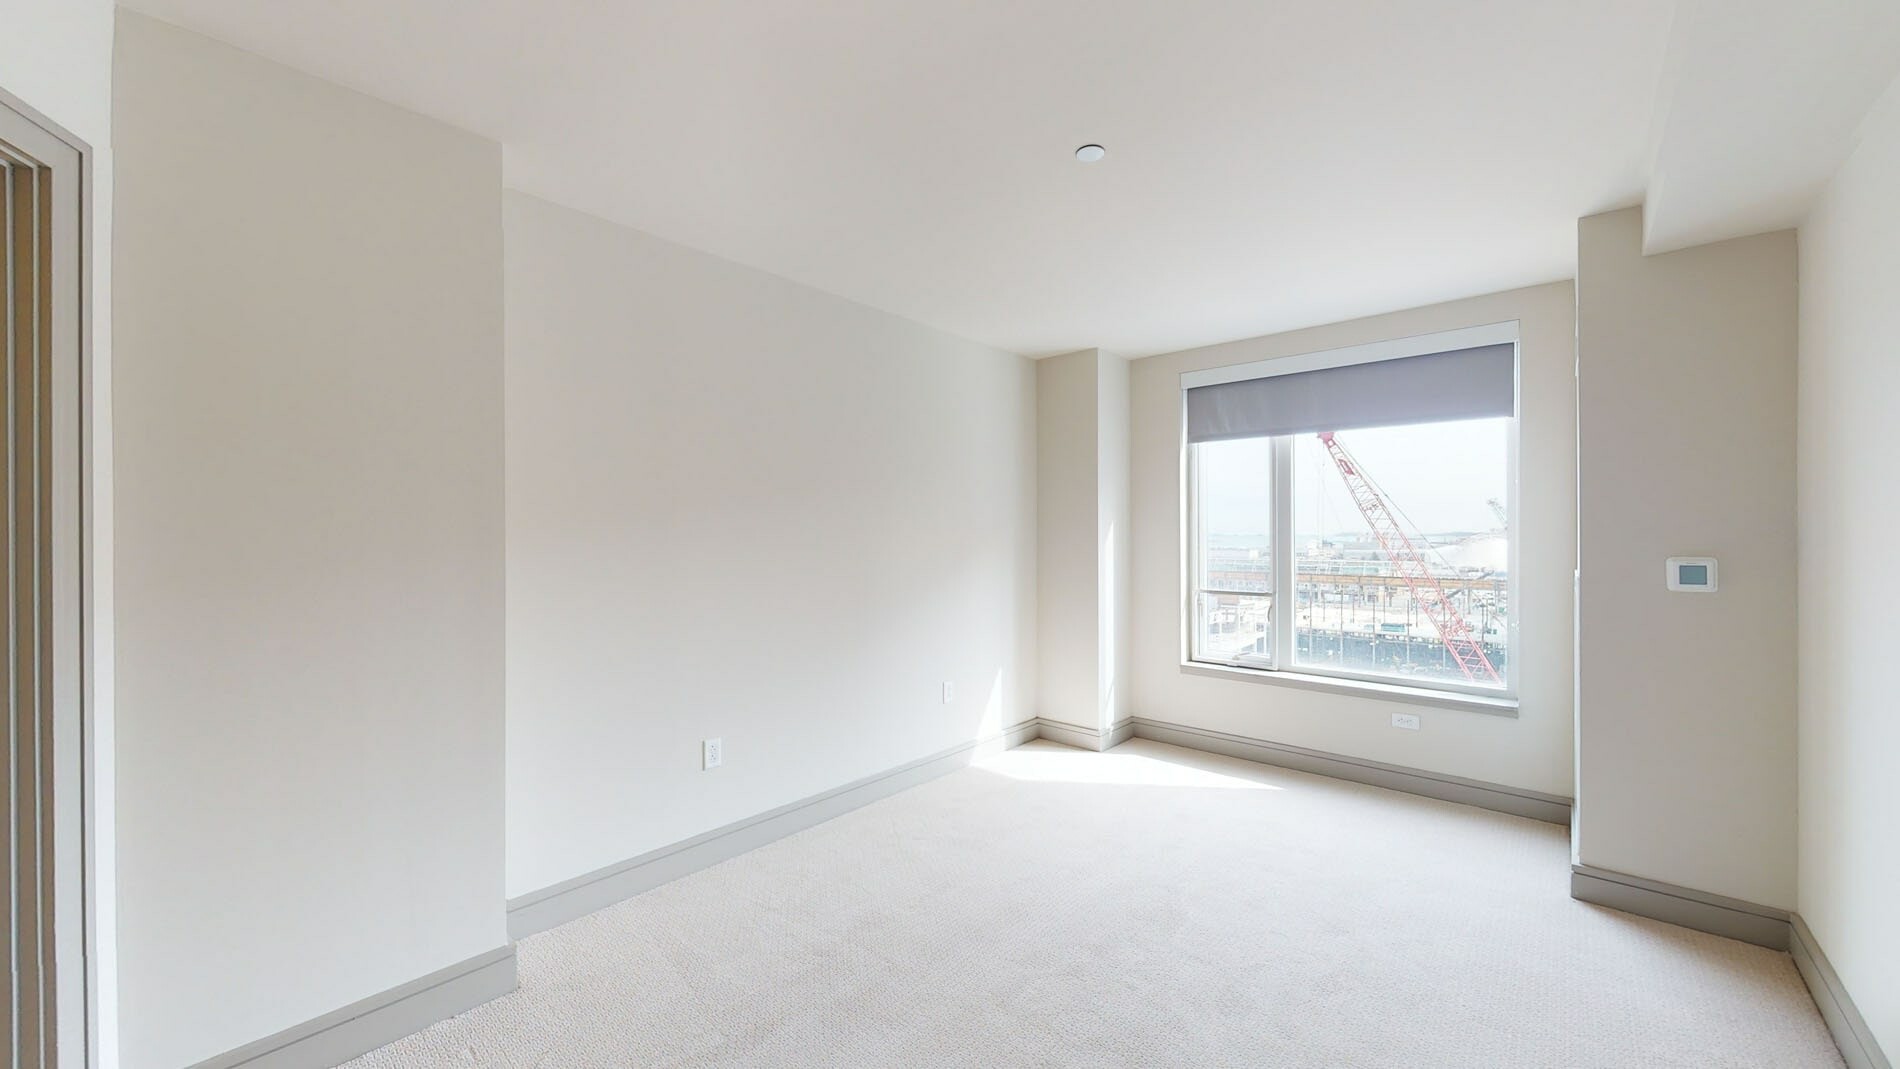 Photos of apartment on Pier 4 Blvd.,Boston MA 02210